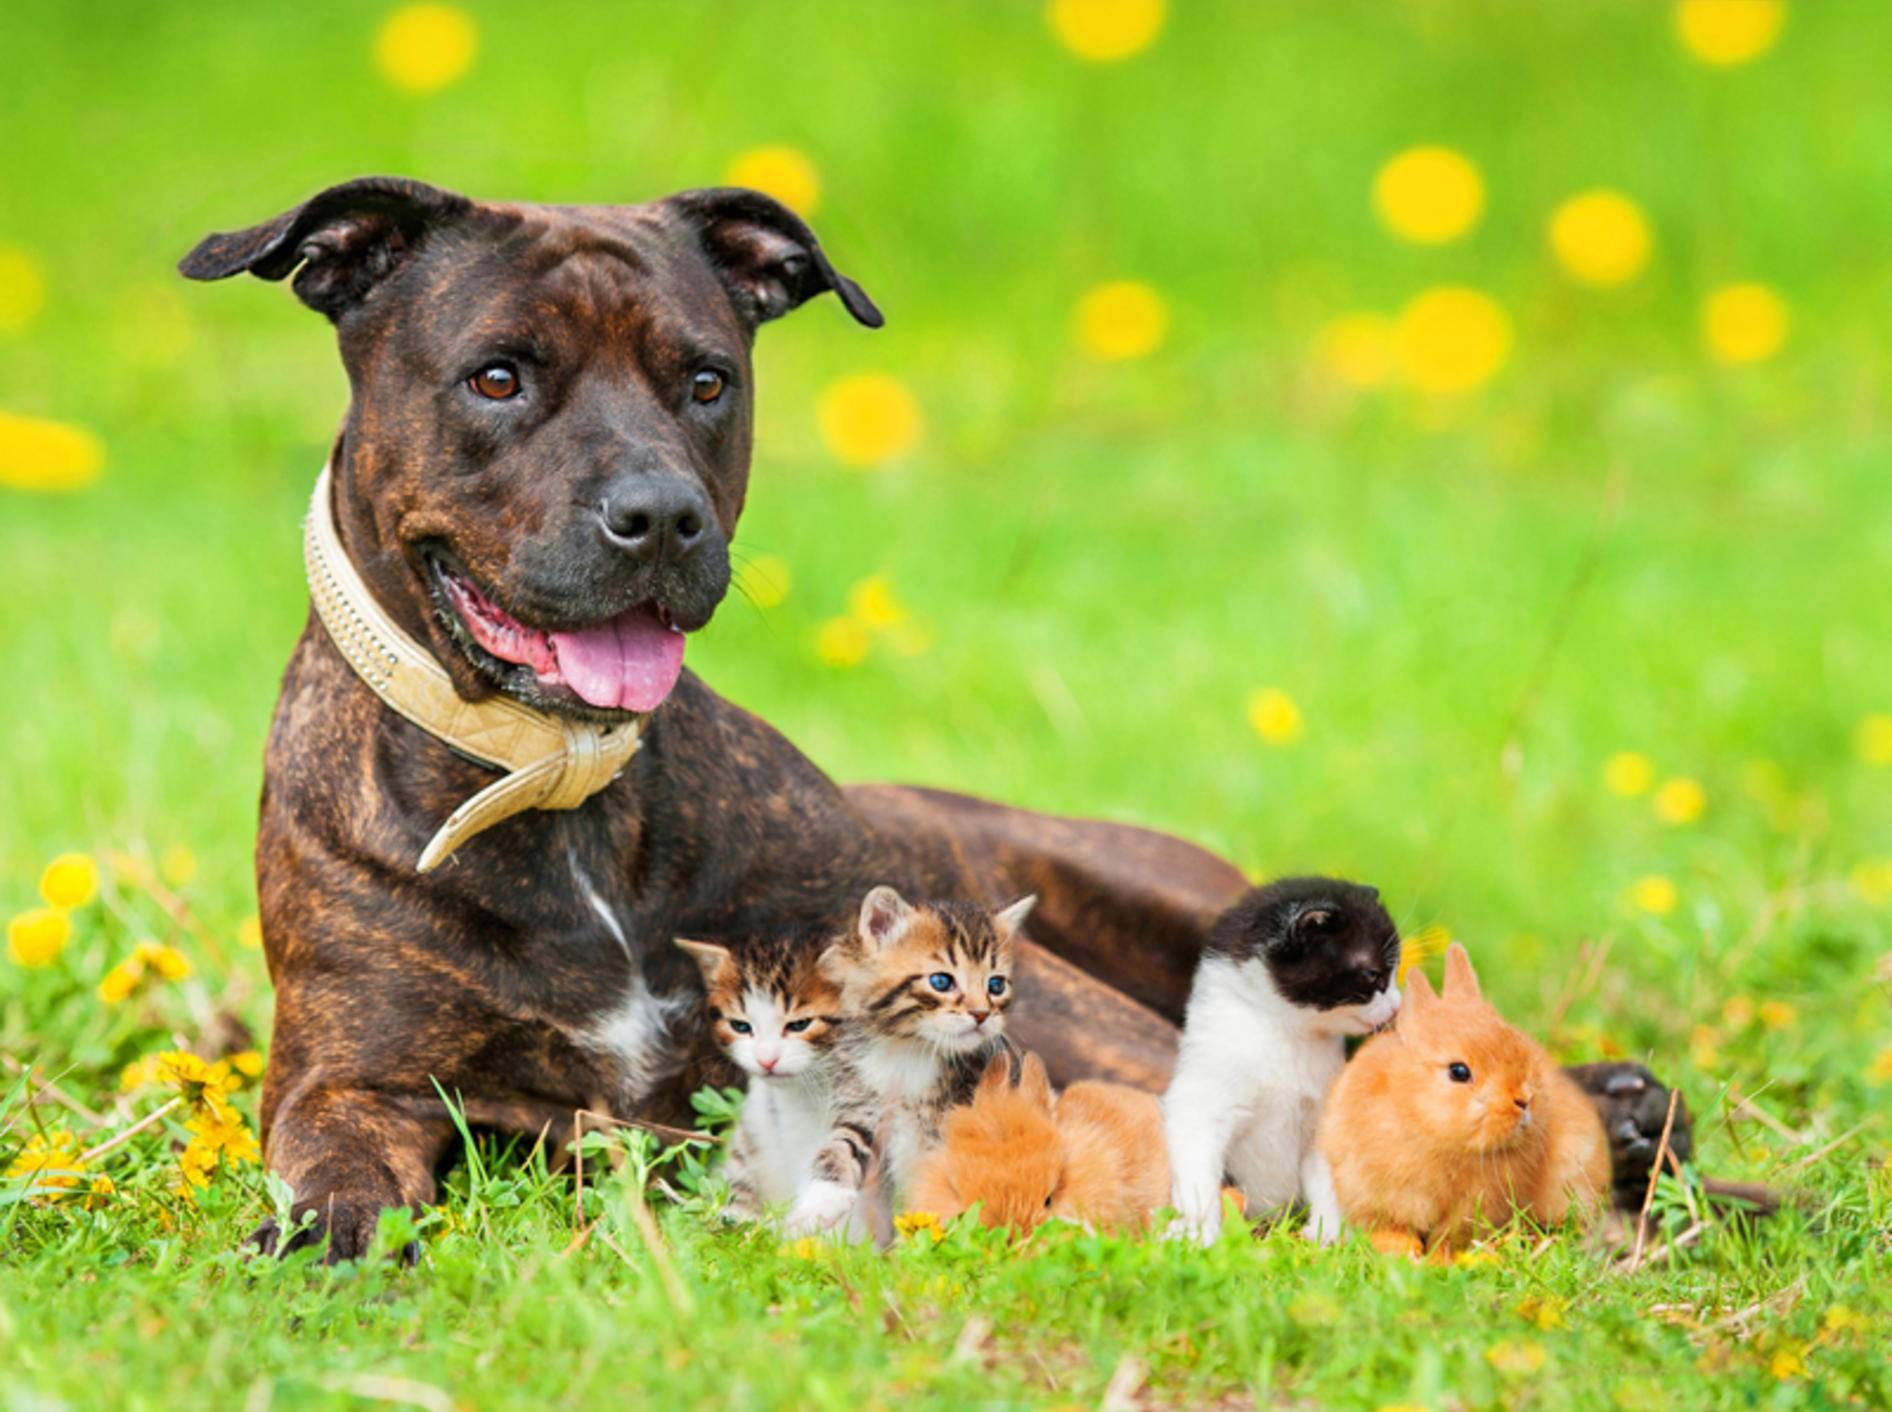 Hund, Katze oder Kleintier: Welcher tierische Freund ist für Sie perfekt? – Shutterstock / Rita Kochmarjova